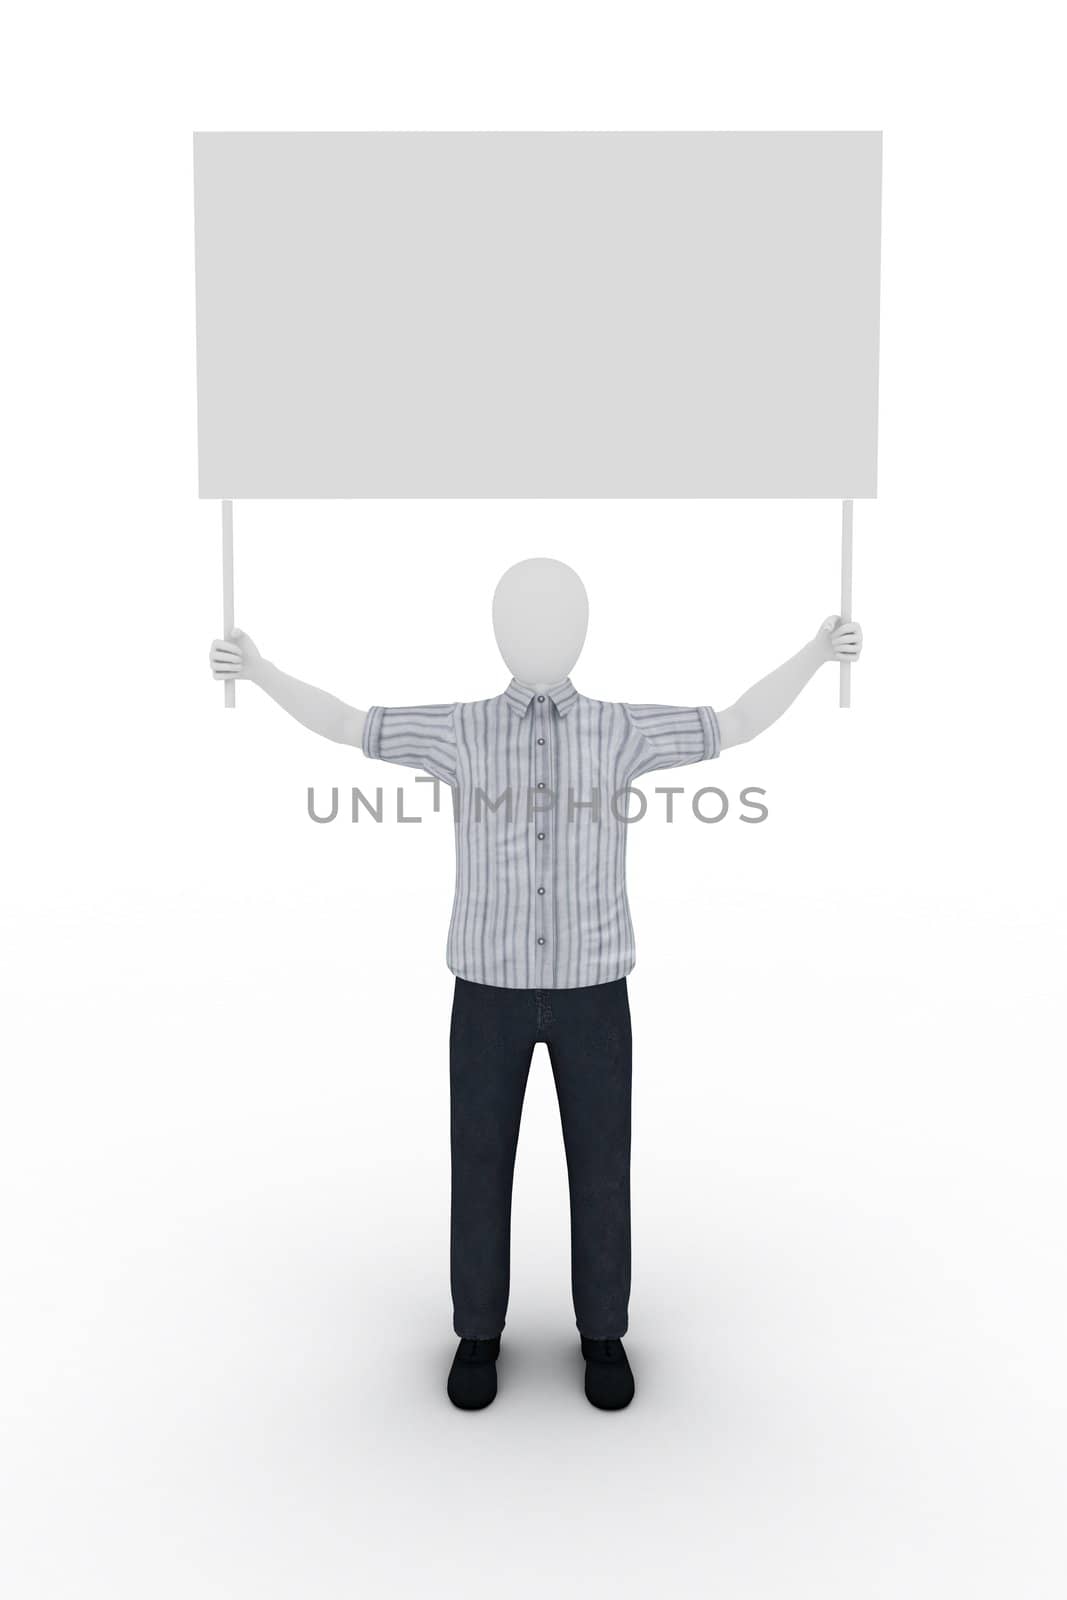 human holding a billboard by richwolf